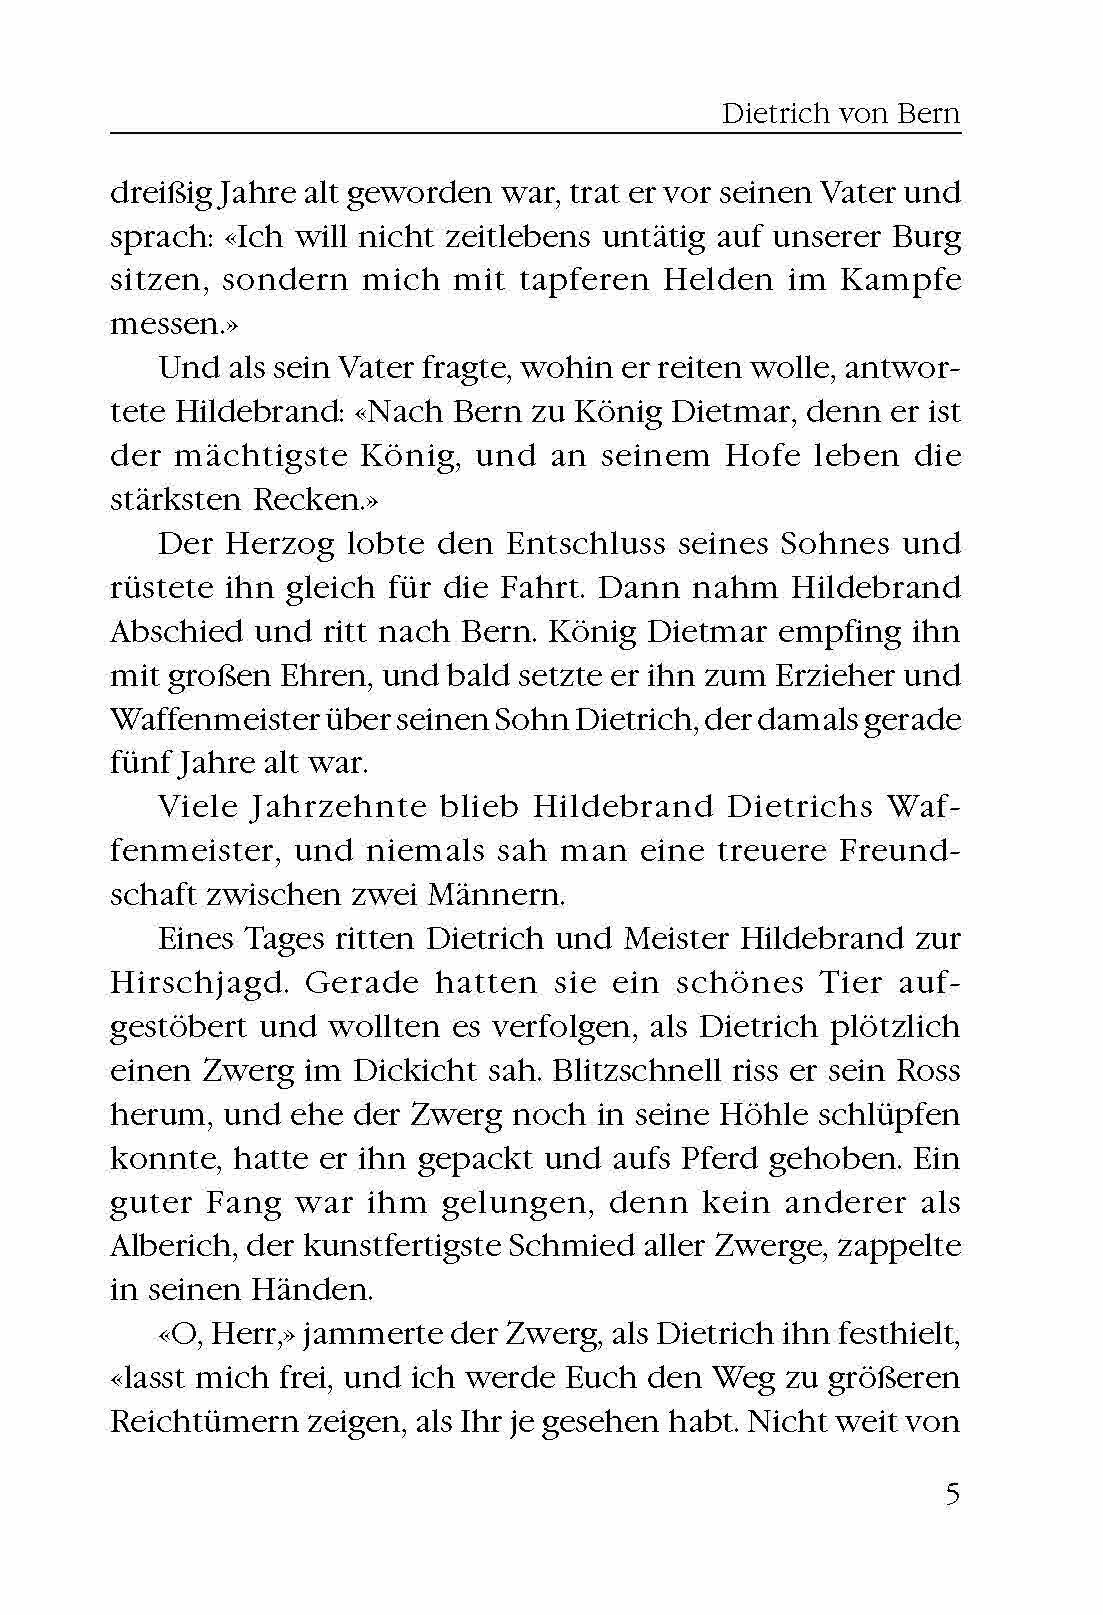 Немецкие предания и легенды. Книга для чтения на немецком языке. Адаптированная - фото №8